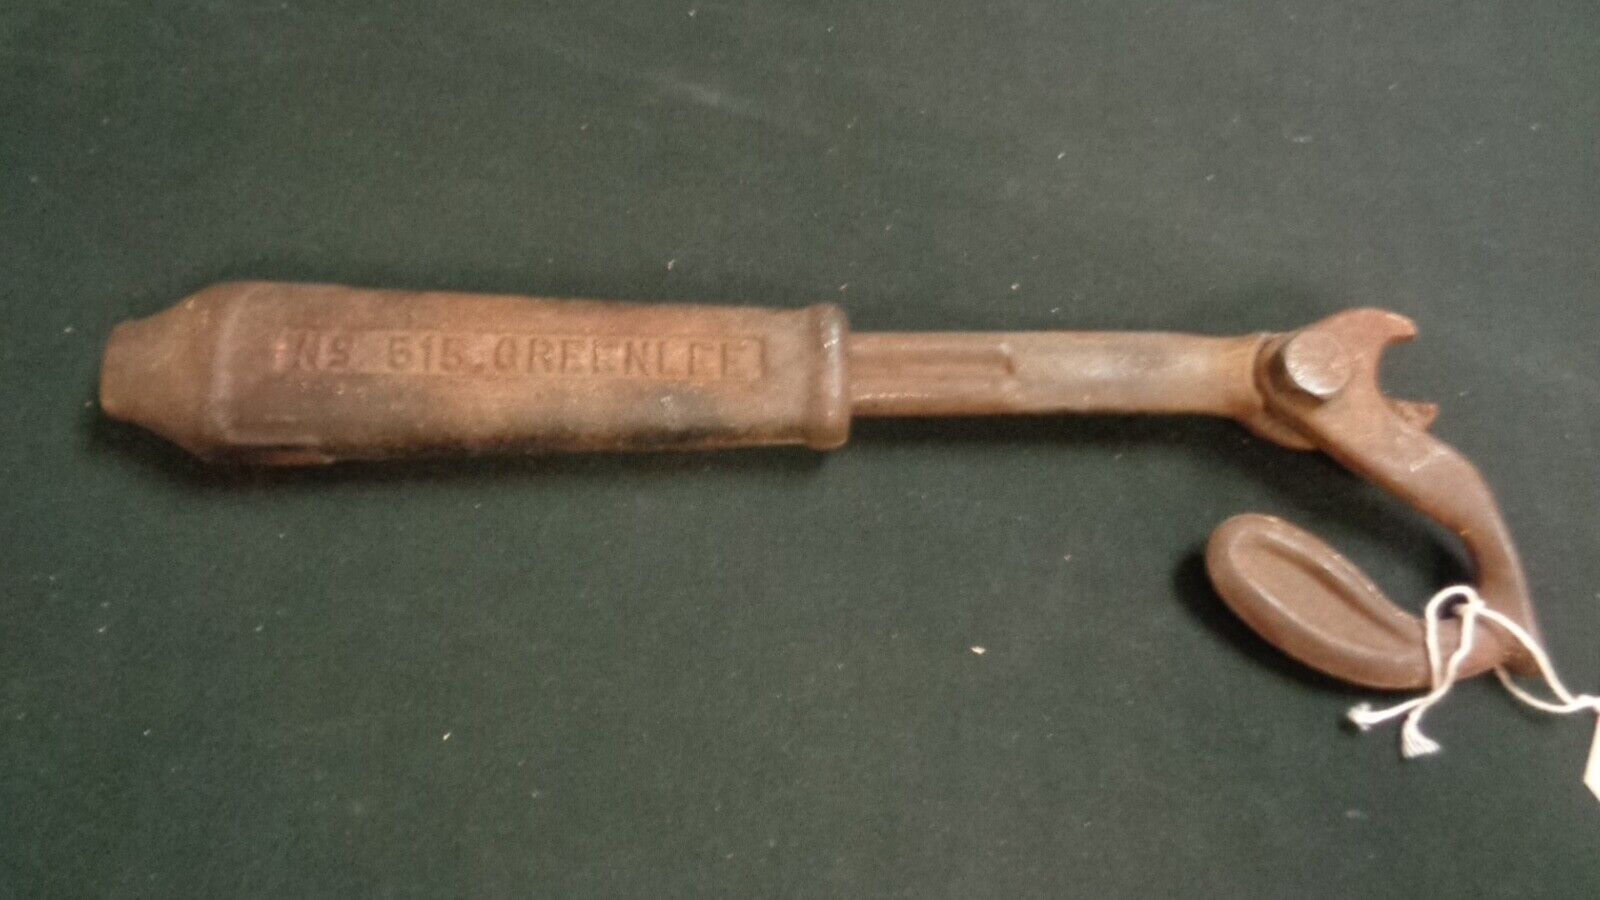 Vintage Greelee No. 515 Hammer Nail Pulter USA